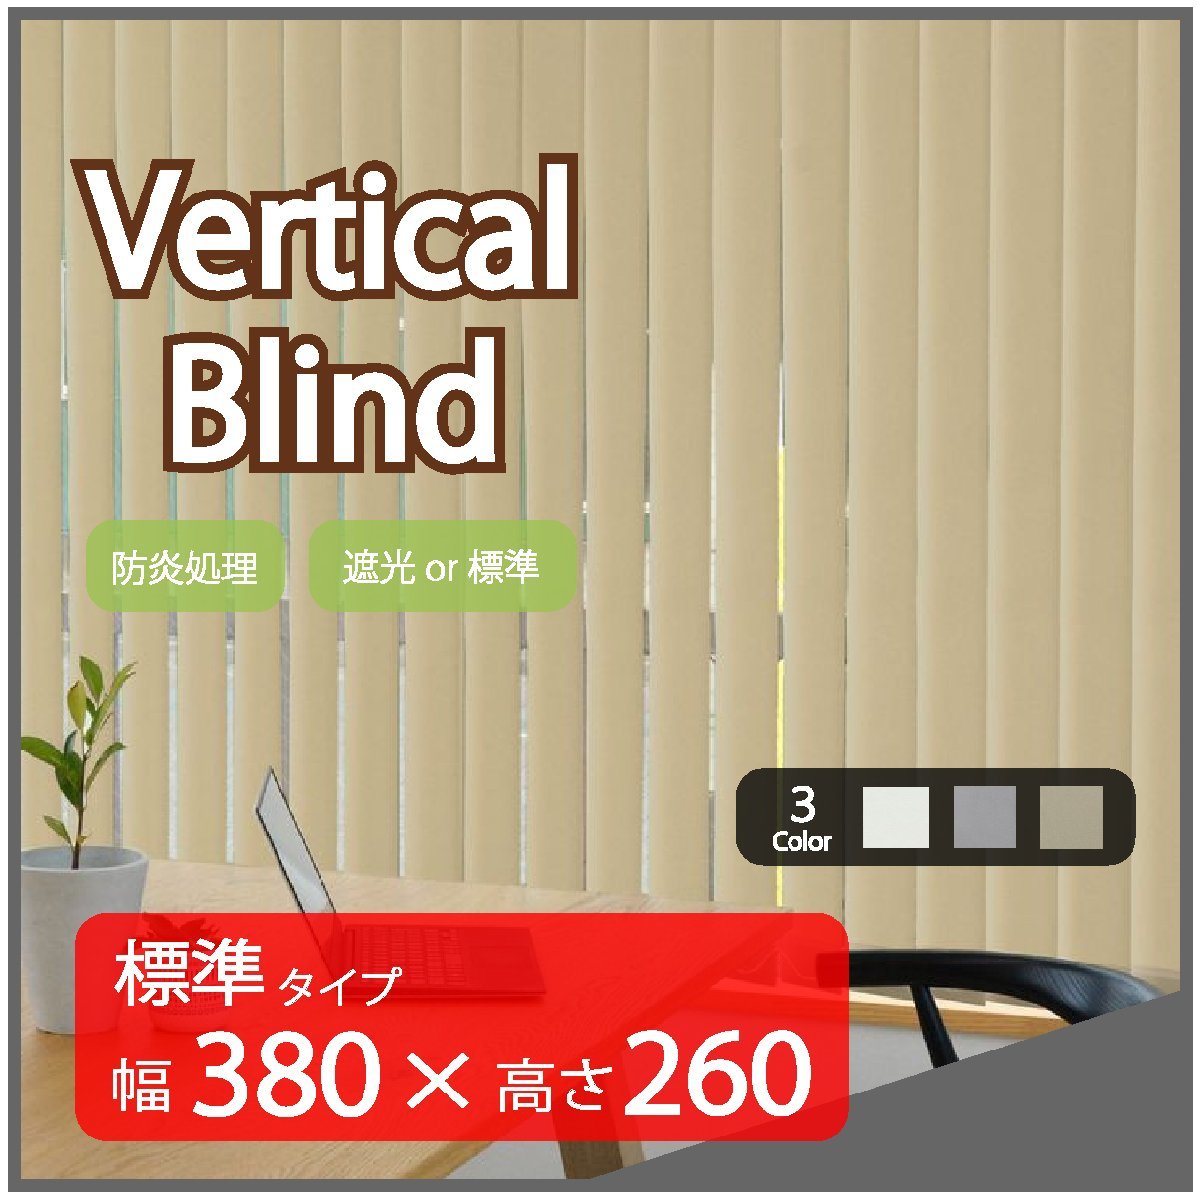 高品質 Verticalblind バーチカルブラインド ベージュ 標準タイプ 幅380cm×高さ260cm 既成サイズ 縦型 タテ型 ブラインド カーテン